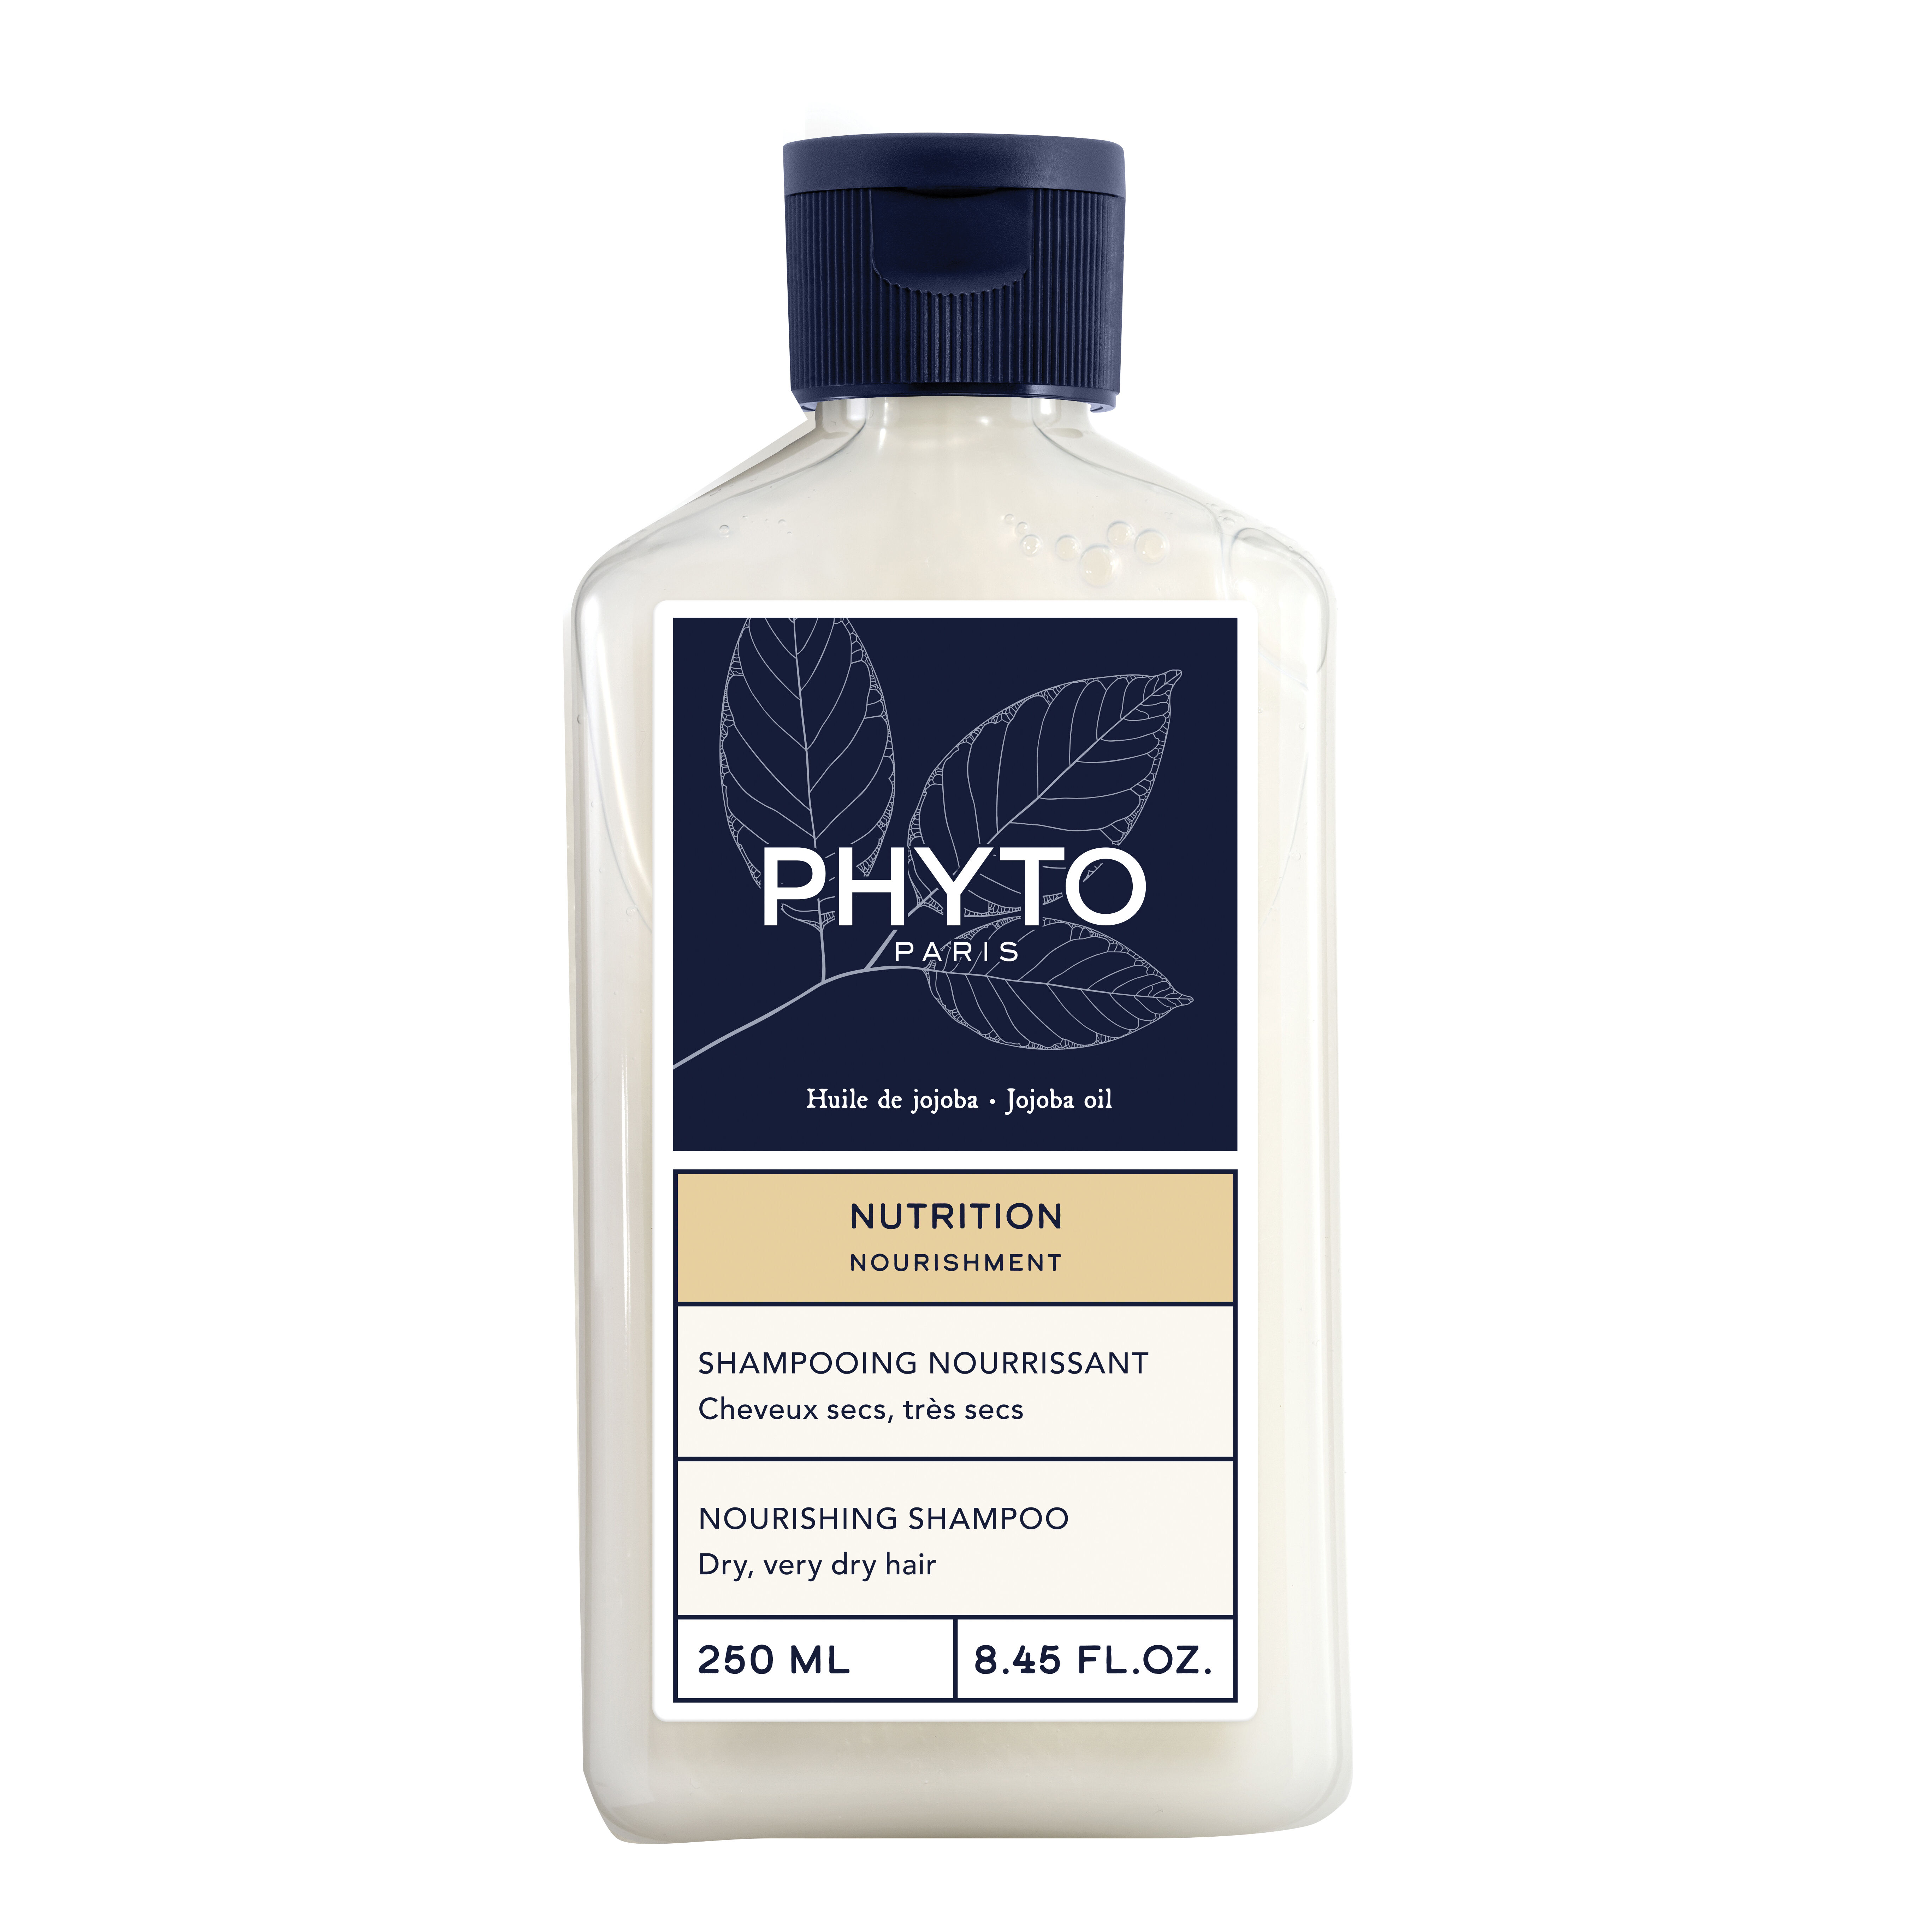 PHYTO nutrition shampoo 250 ml